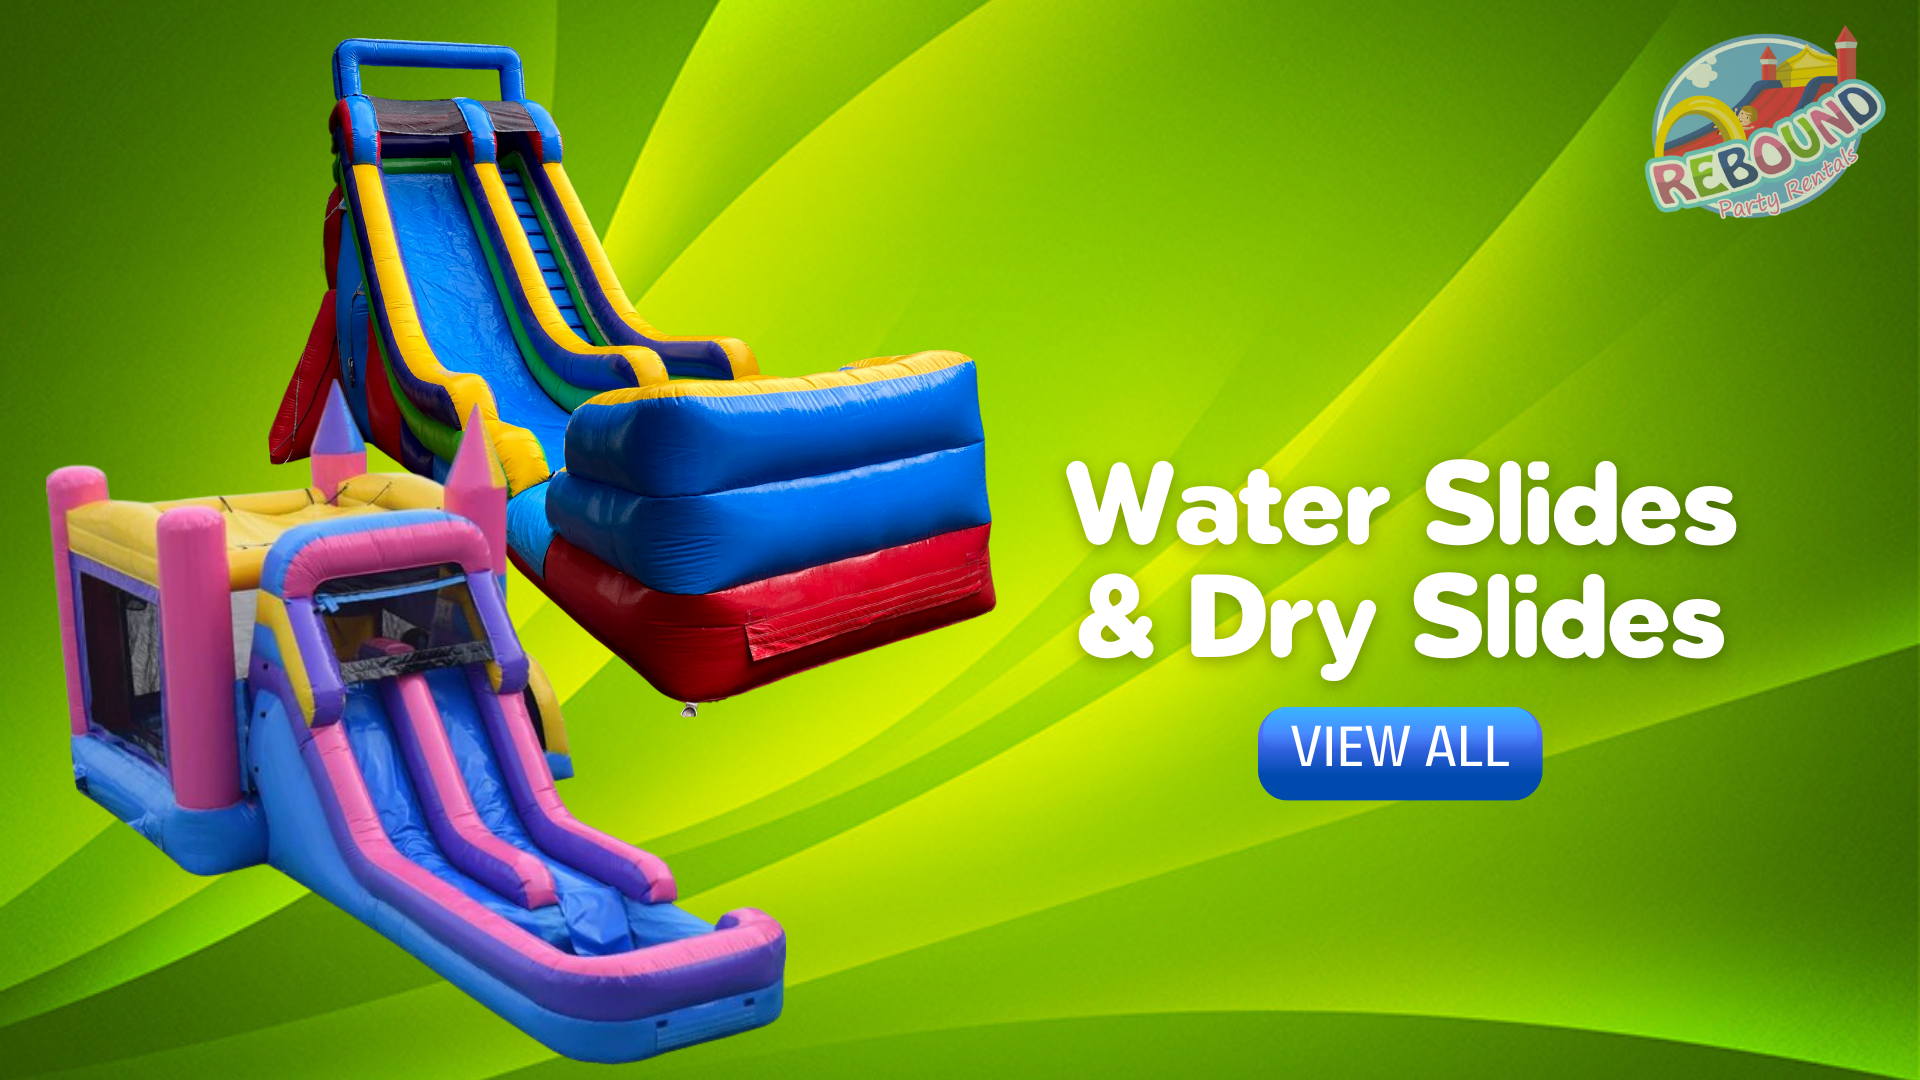 Summerfield Inflatable Water Slide Rental